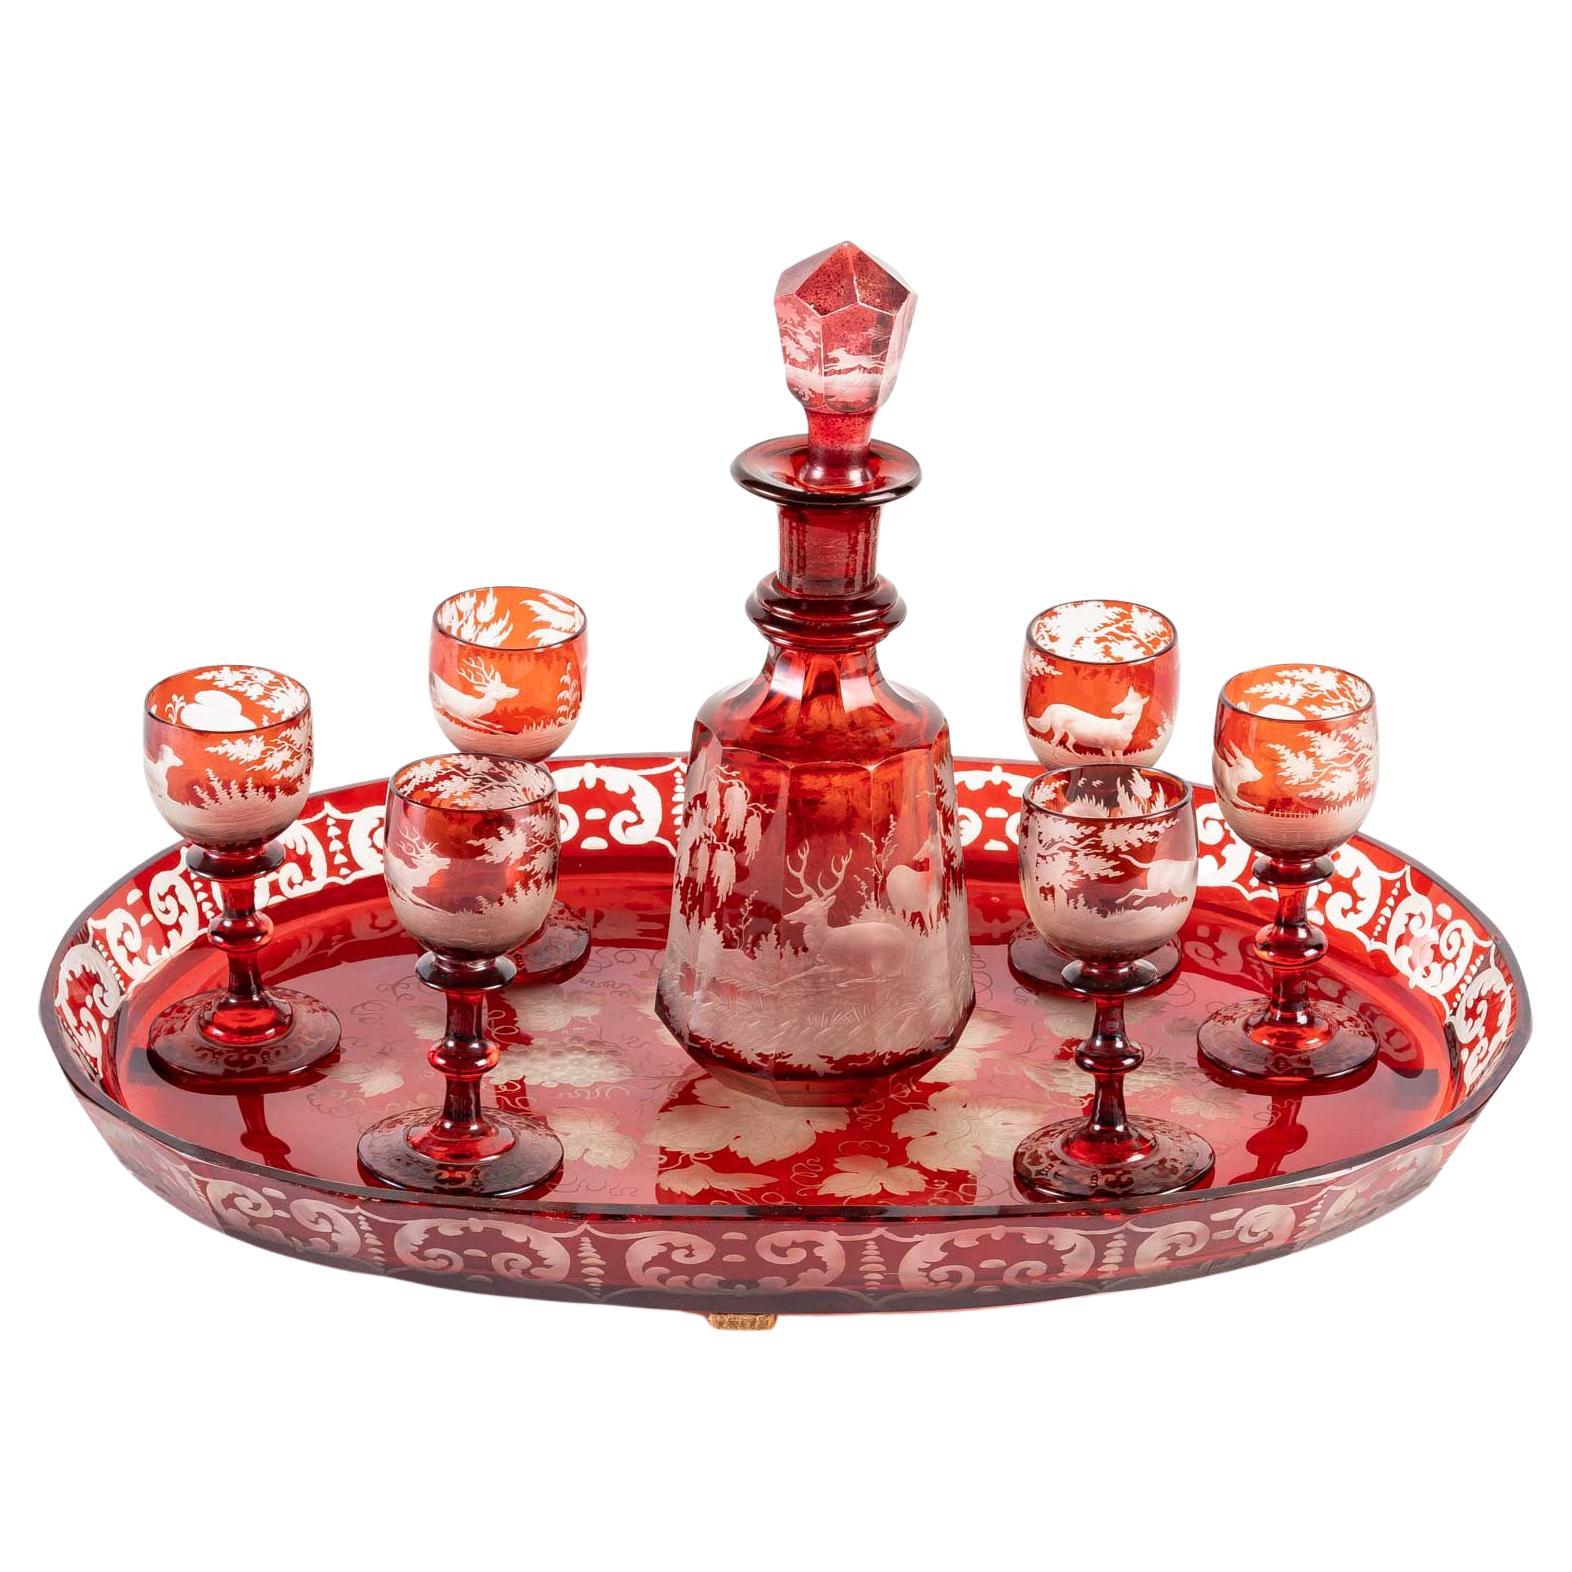 Service en cristal de Bohème rouge, 19e siècle